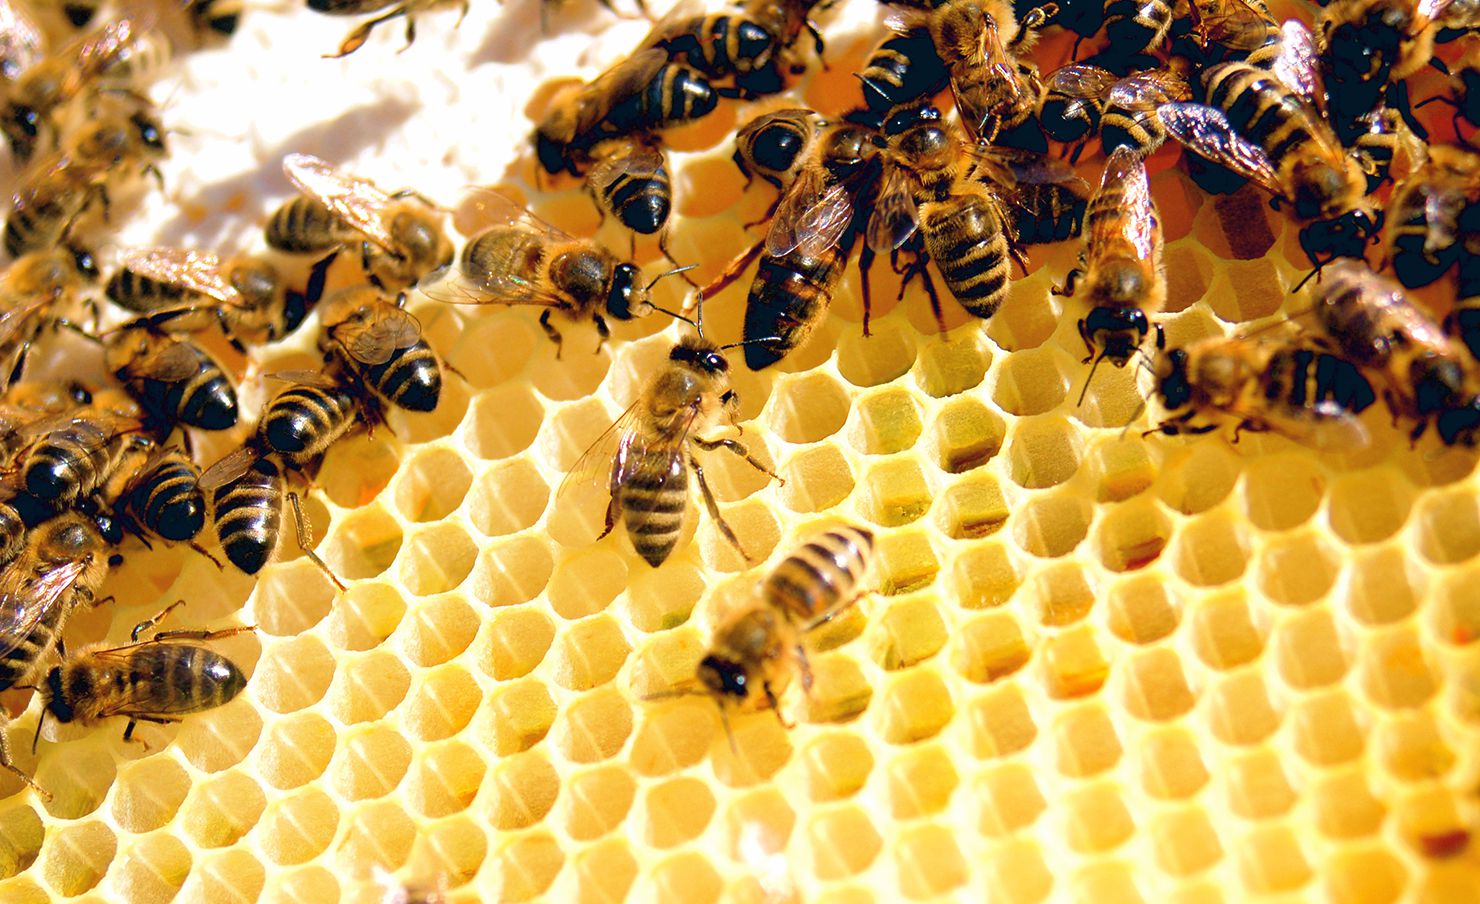 خلية النحل معلومات رائعة تعرفها لأول مرة عن النحل ووظائفه في الخلية